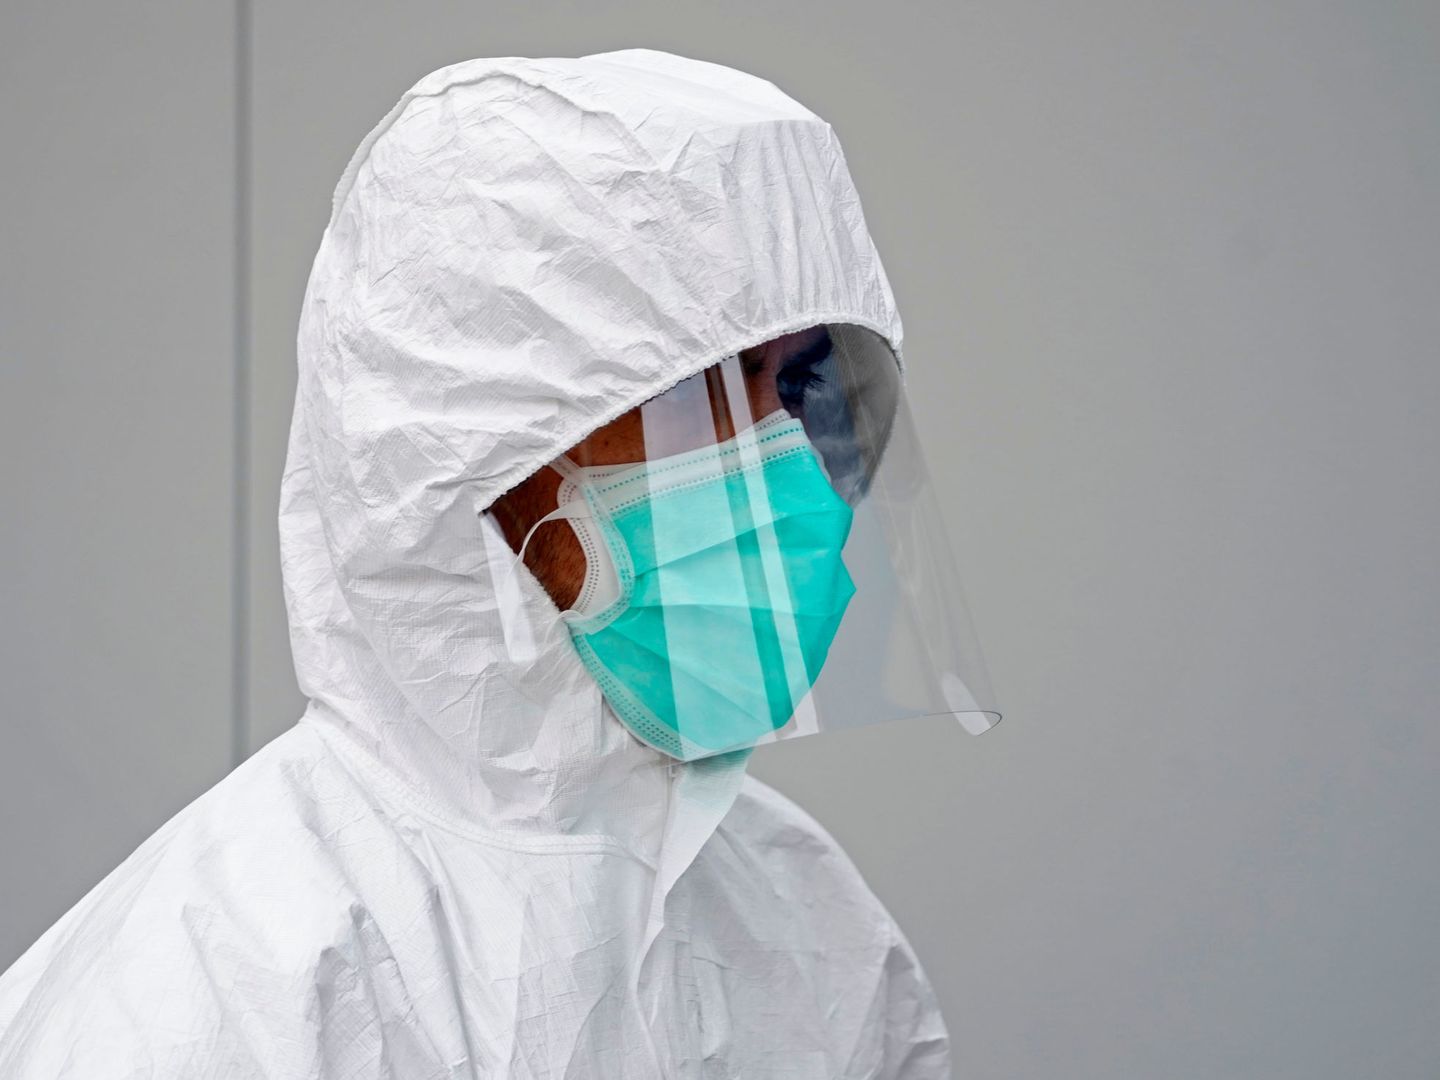 Un trabajador sanitario, con una máscara protectora. (EFE)